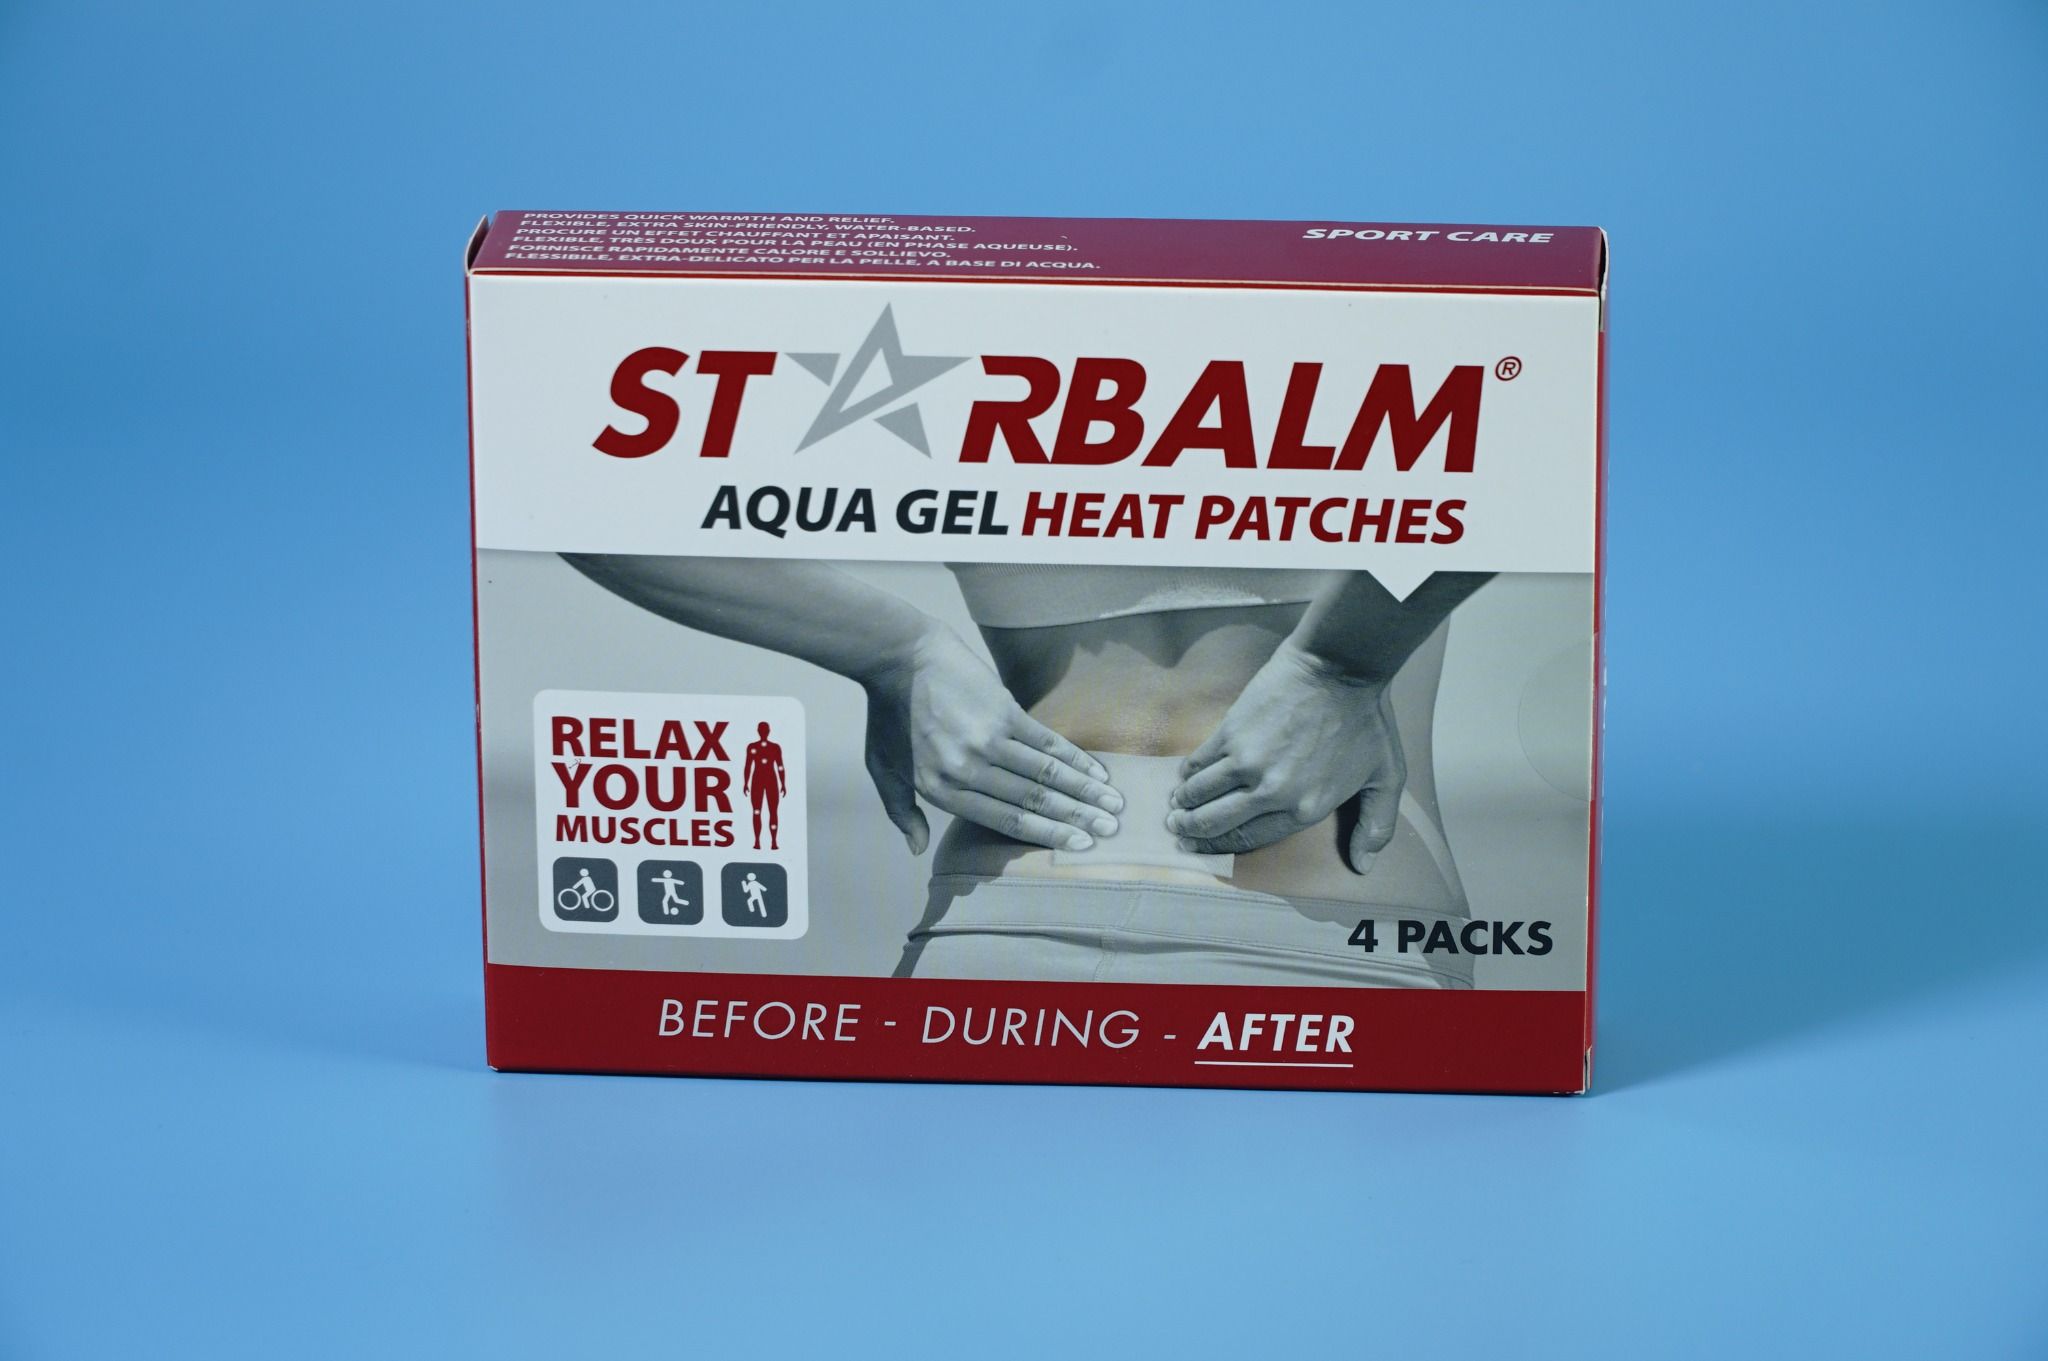  Miếng dán xoa bóp nhiệt Starbalm HEAT PATCH 4 miếng dán - After giảm đau, tan bầm, nhanh hồi phục 